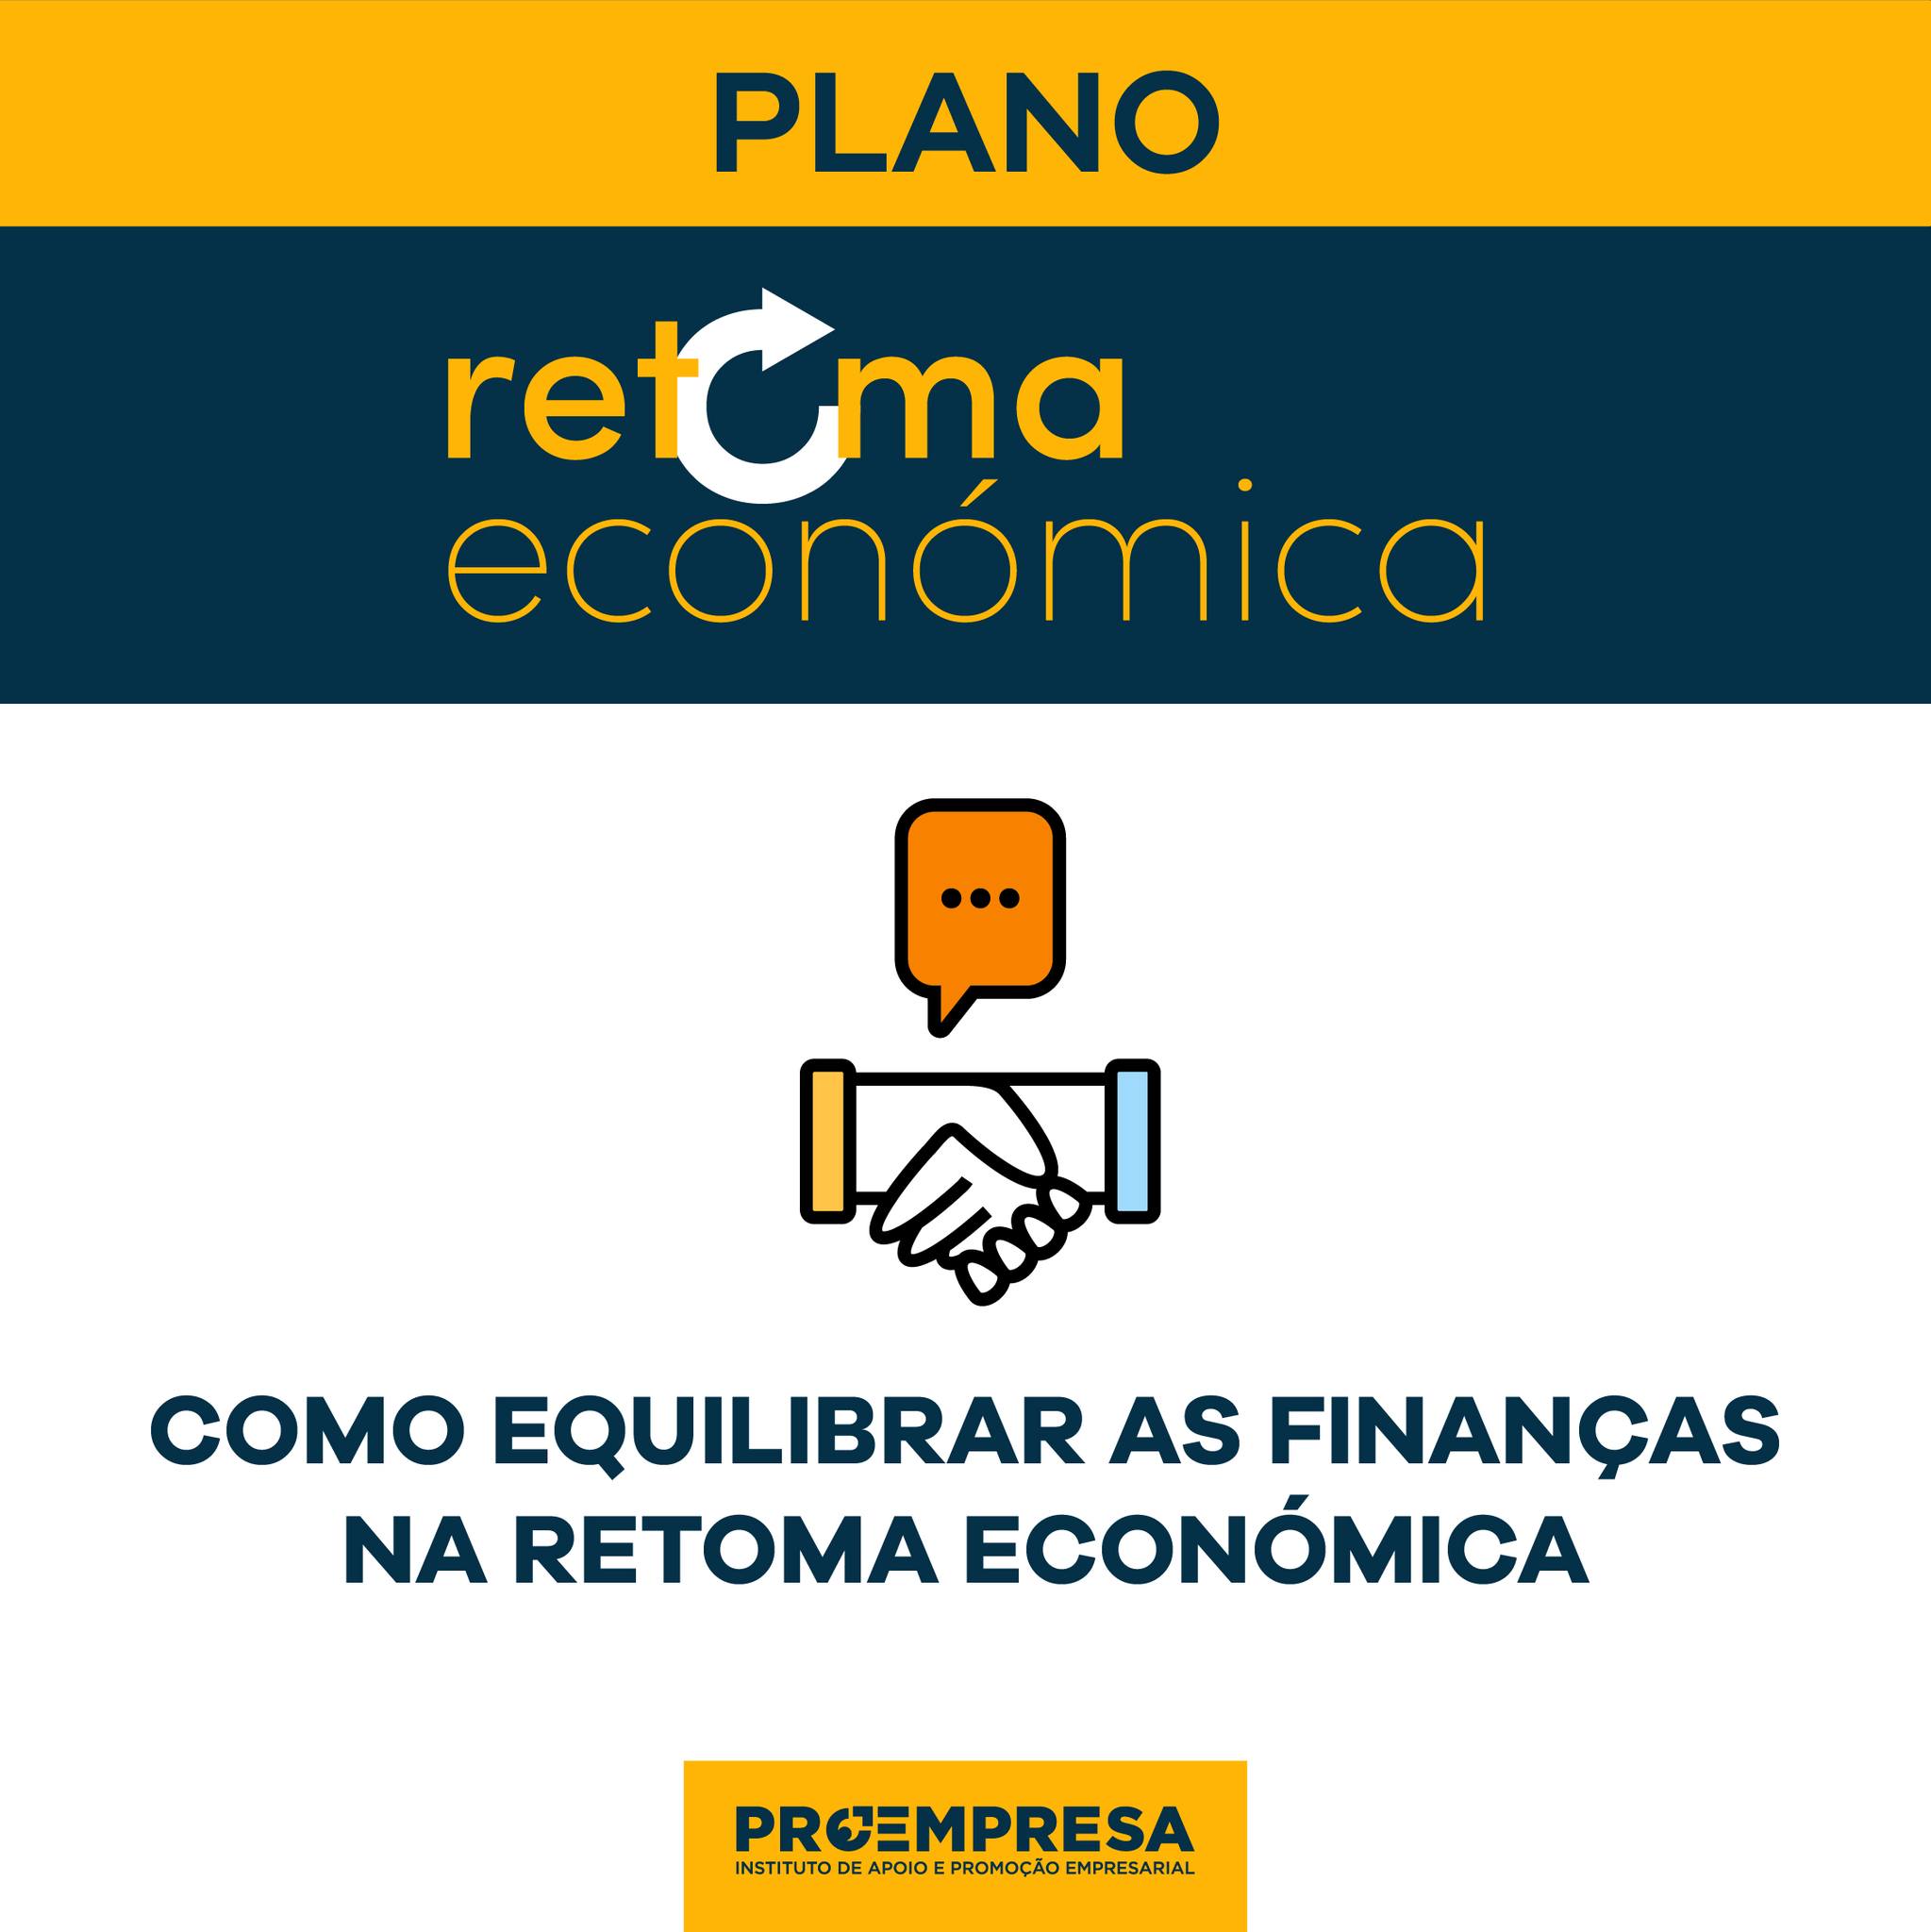 Plano Retoma Económica - Como equilibrar as finanças?